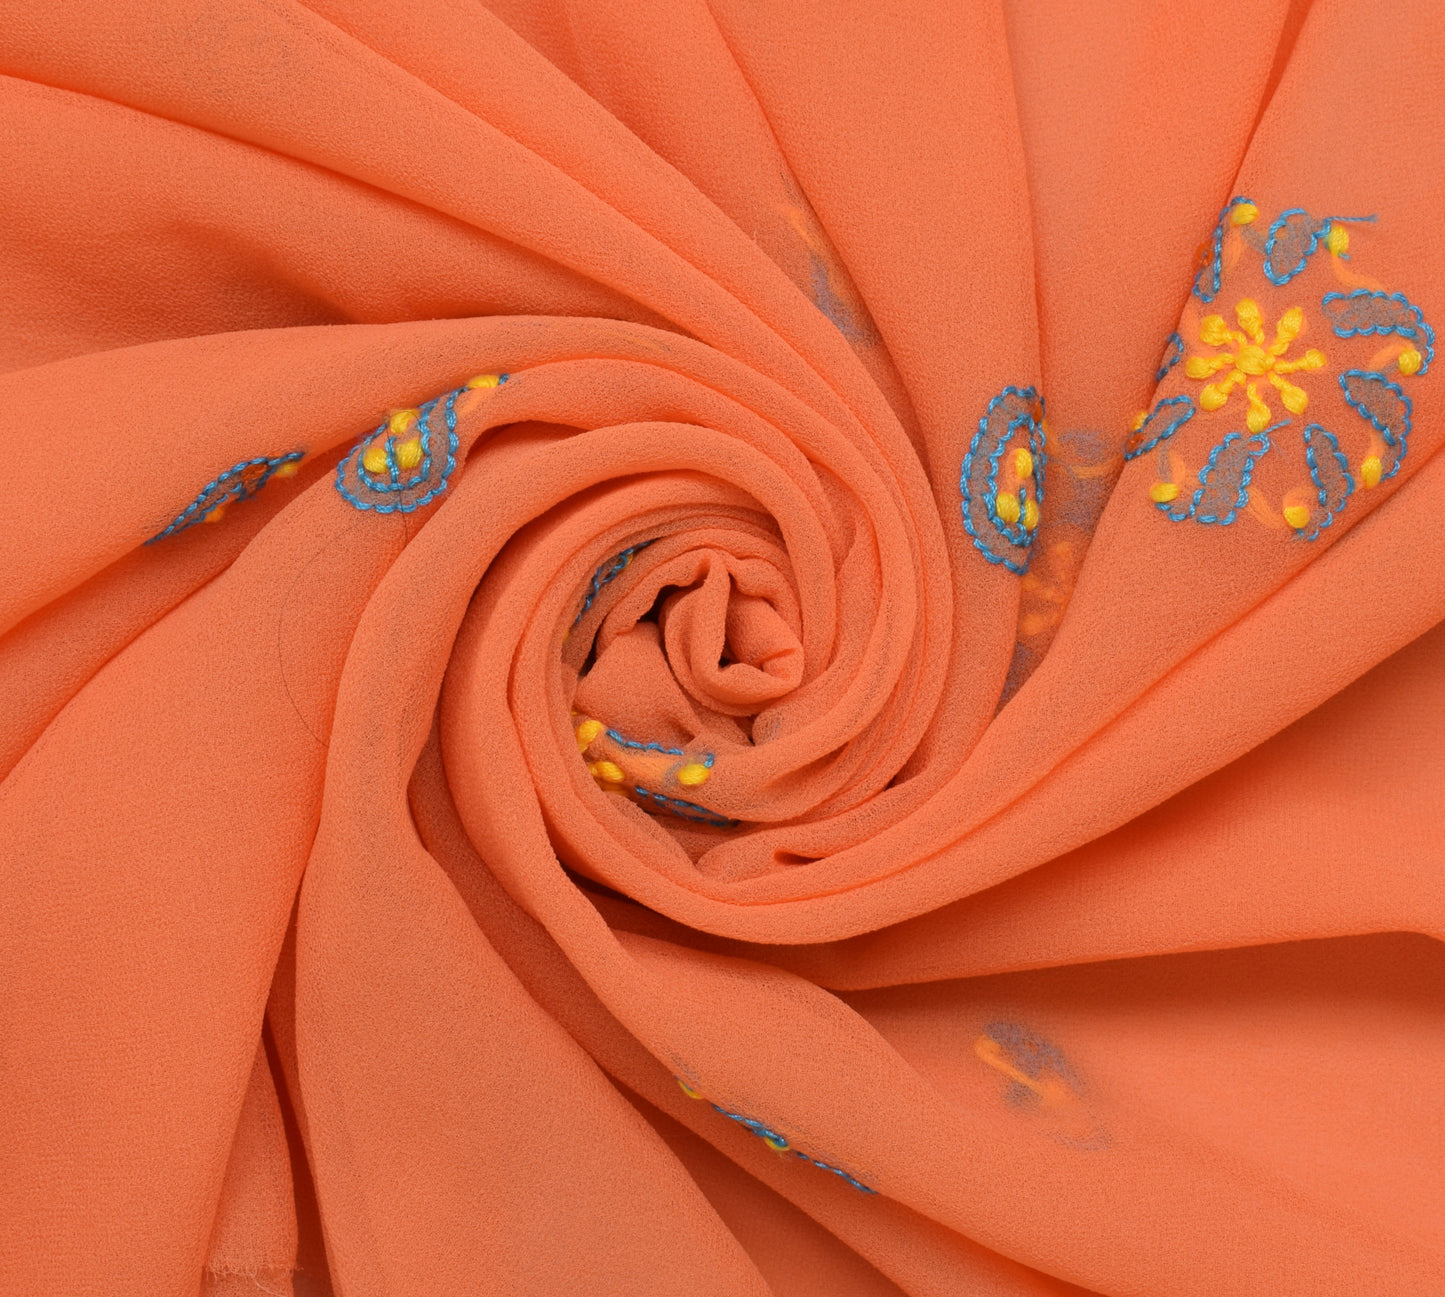 Sushila Vintage Orange Remnant Scrap Blend Georgette Embroidered Craft Fabric